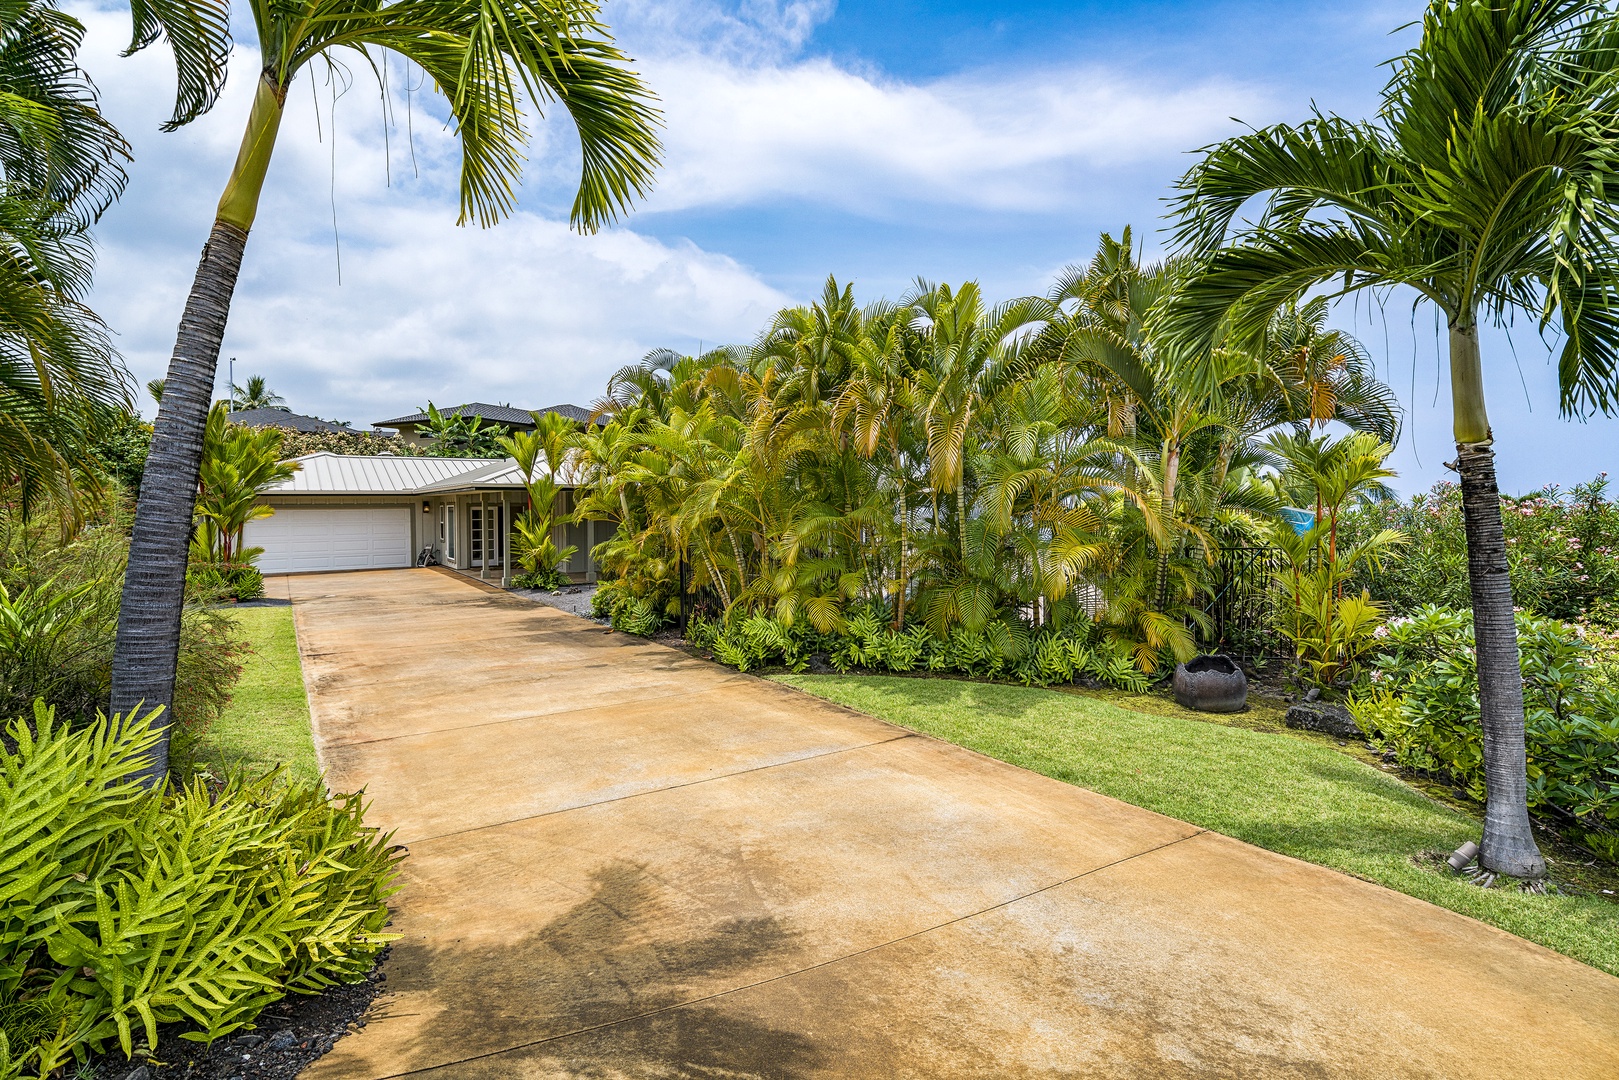 Kailua Kona Vacation Rentals, Sunset Hale - Path to the house